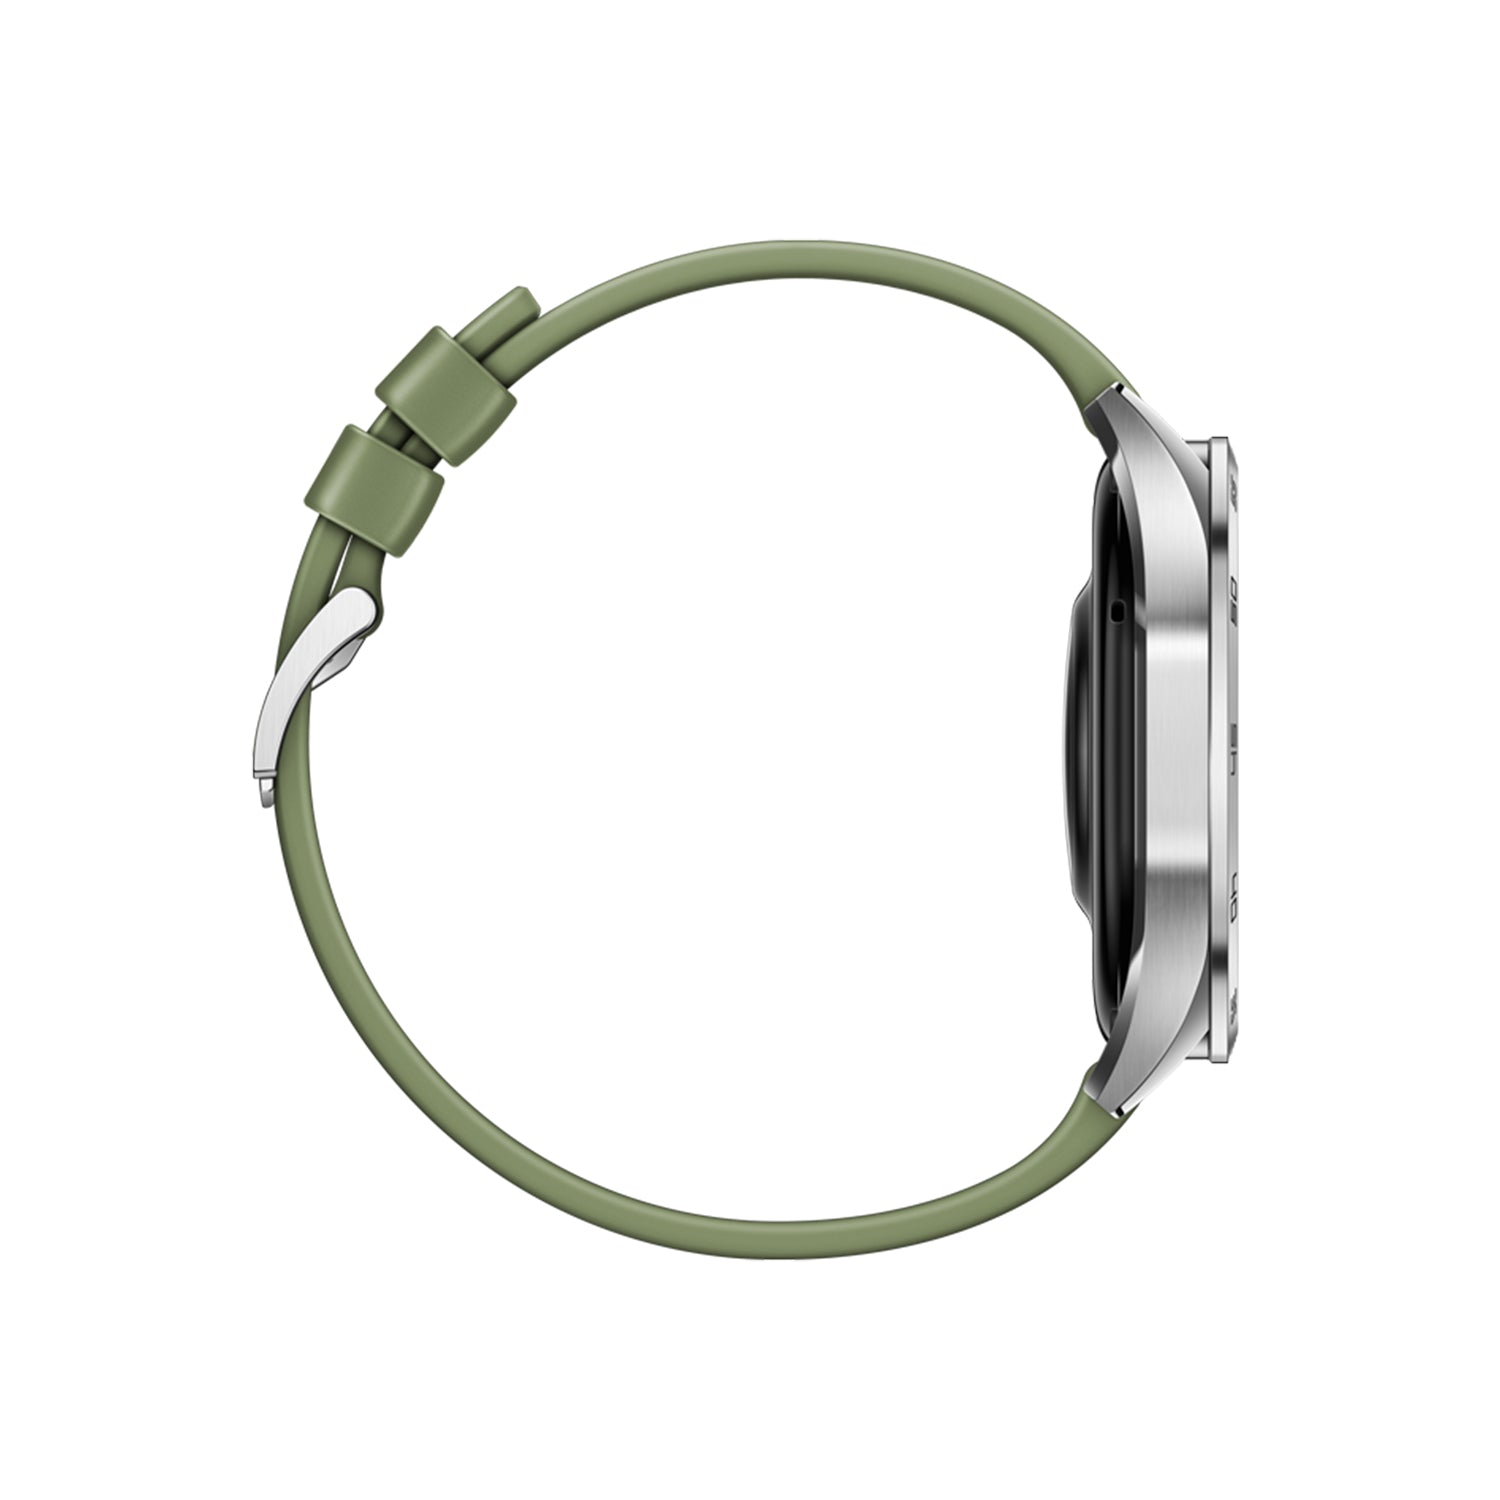 Huawei Watch GT 4 Smartwatch